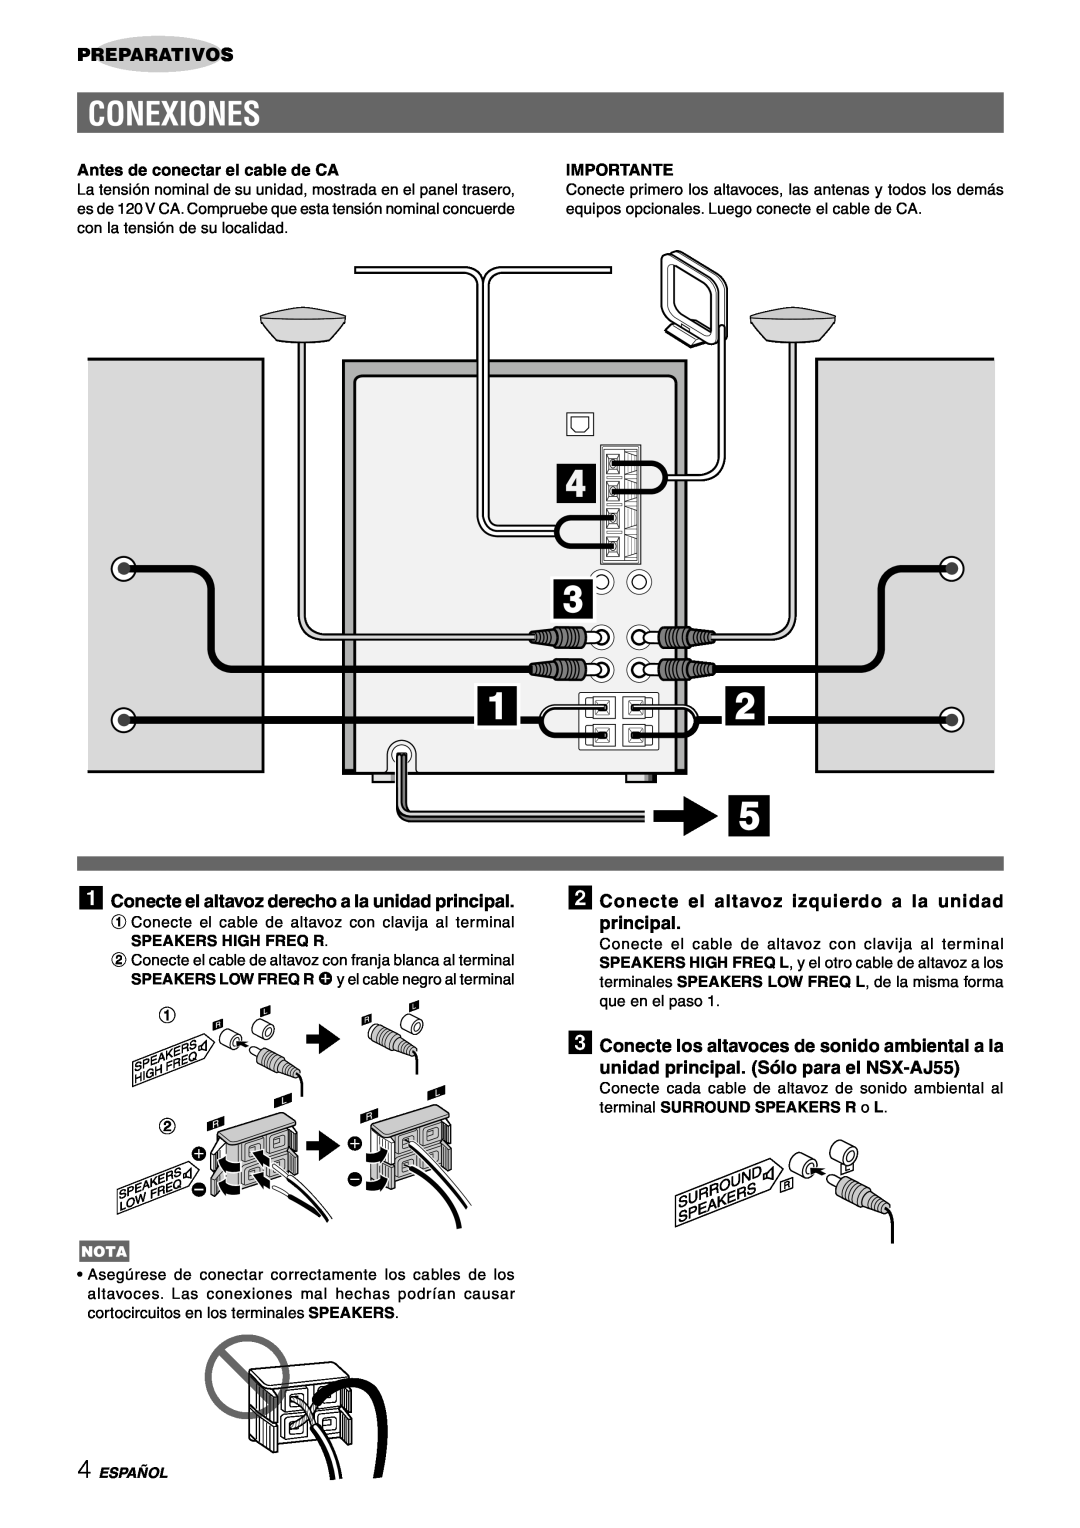 Aiwa CX-NAJ54 manual Conexiones, Preparativos, Antes de conectar el cable de CA, Importante, Español 